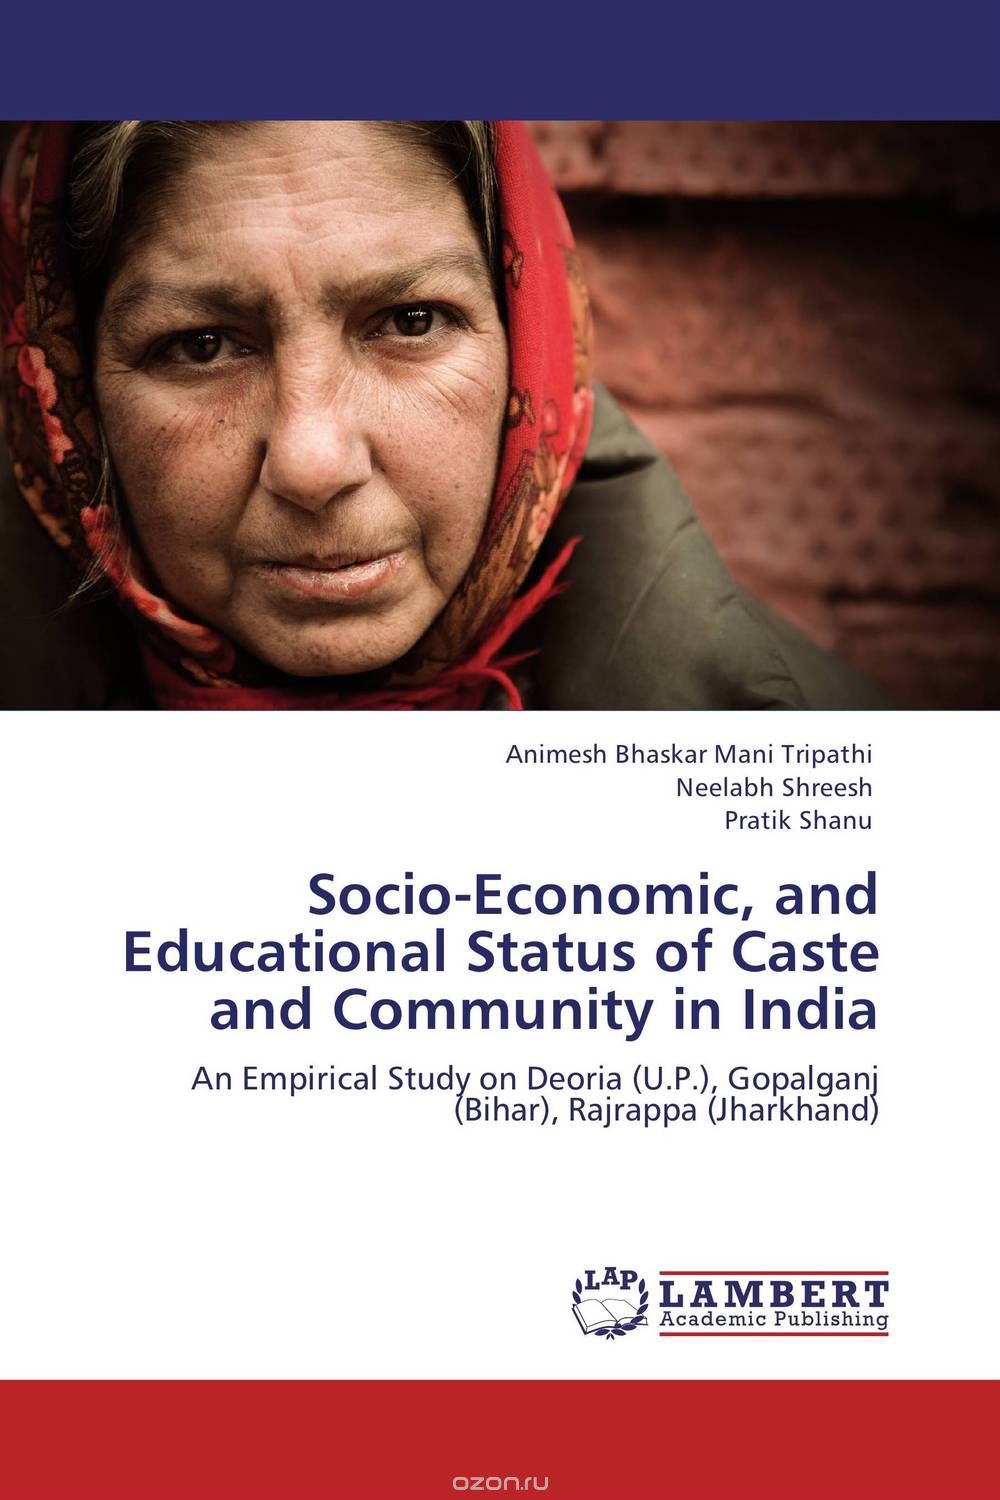 Скачать книгу "Socio-Economic, and Educational Status of Caste and Community in India"